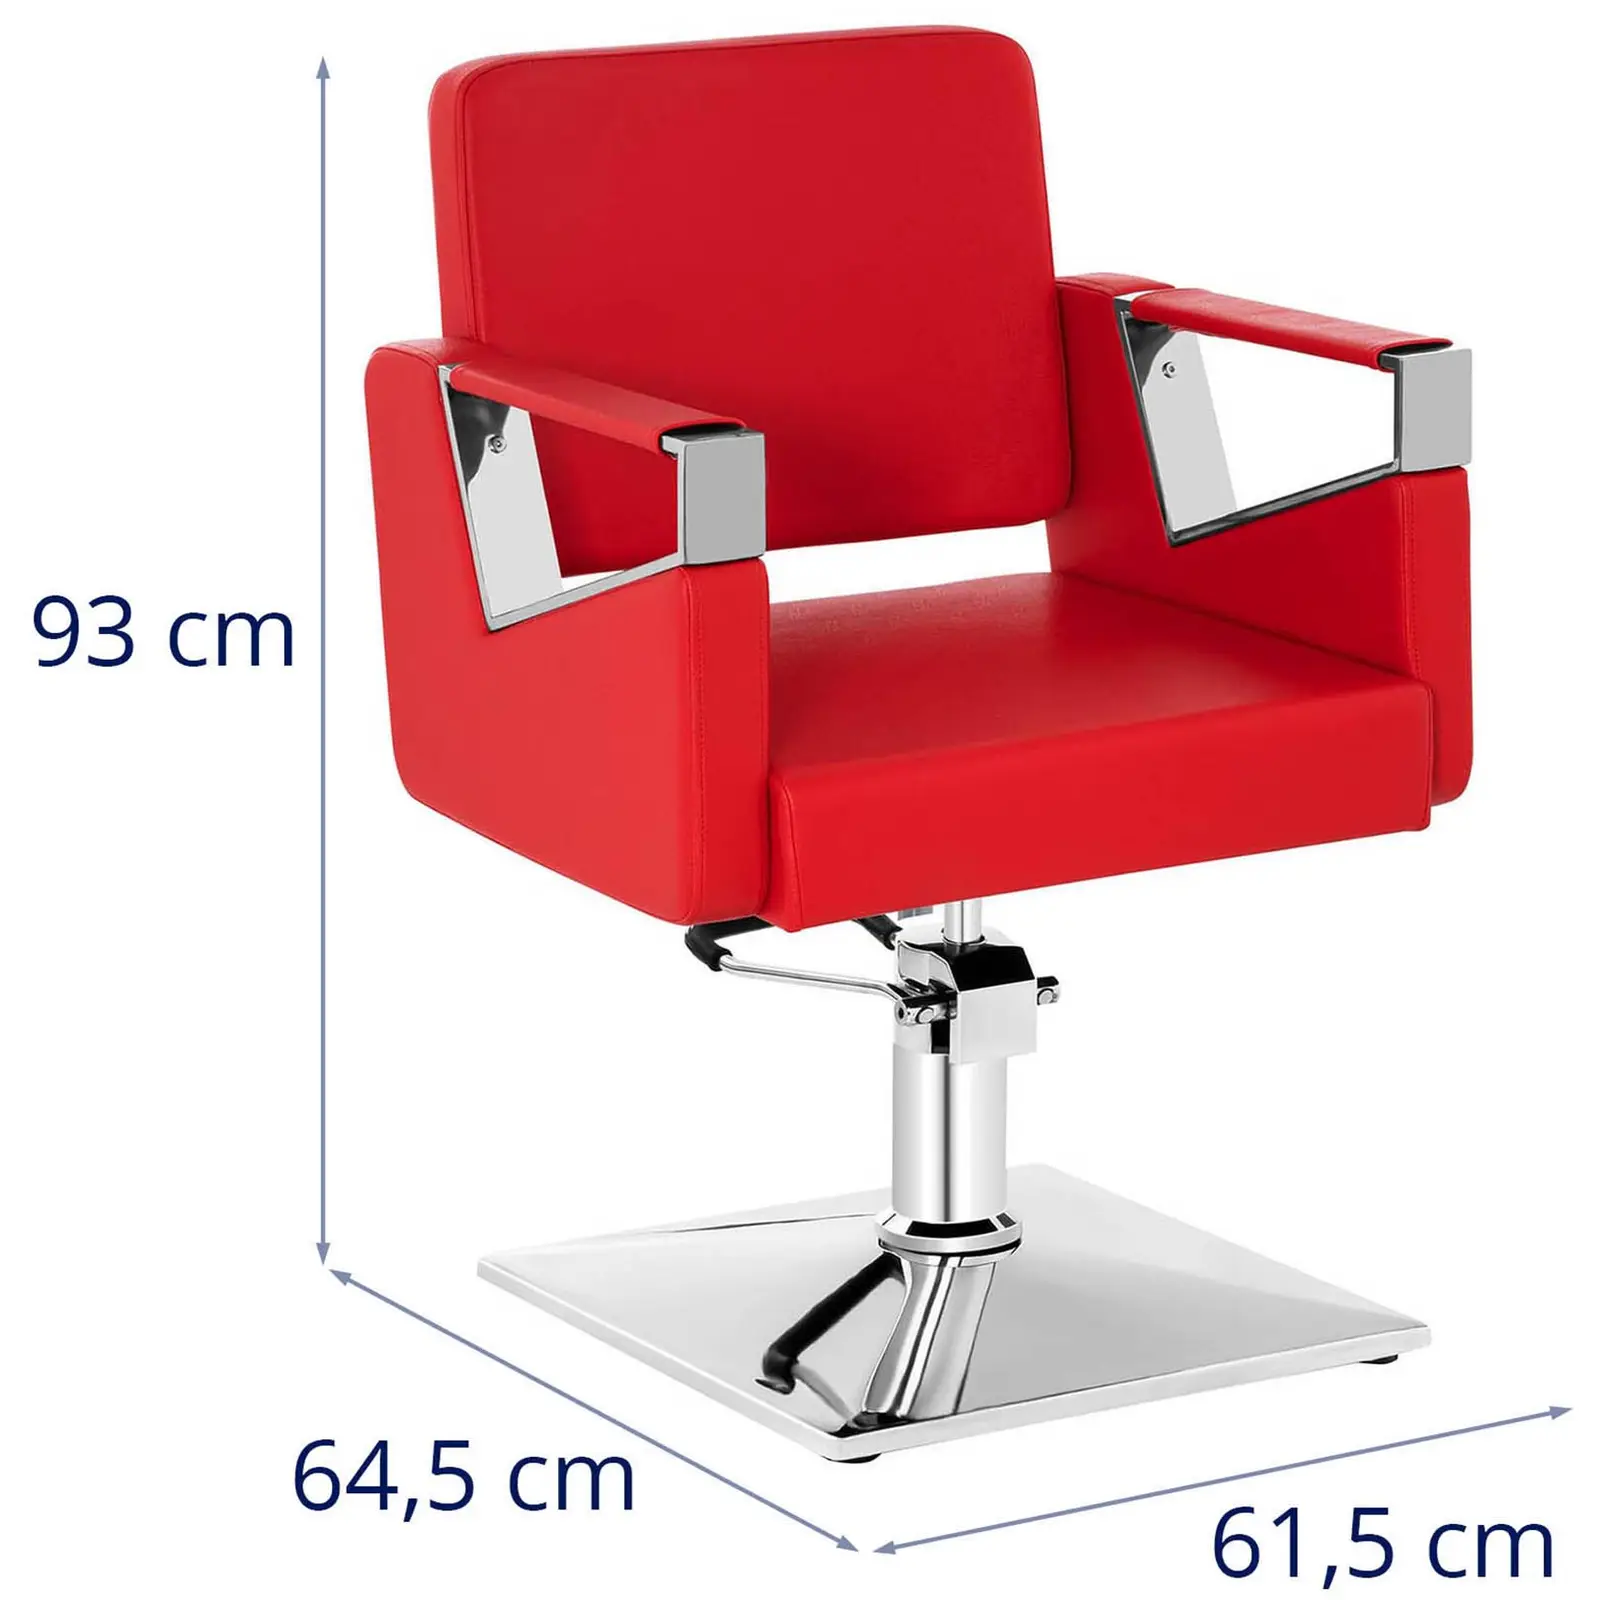 Fodrász szék - 445–550 mm - 200 kg - Piros